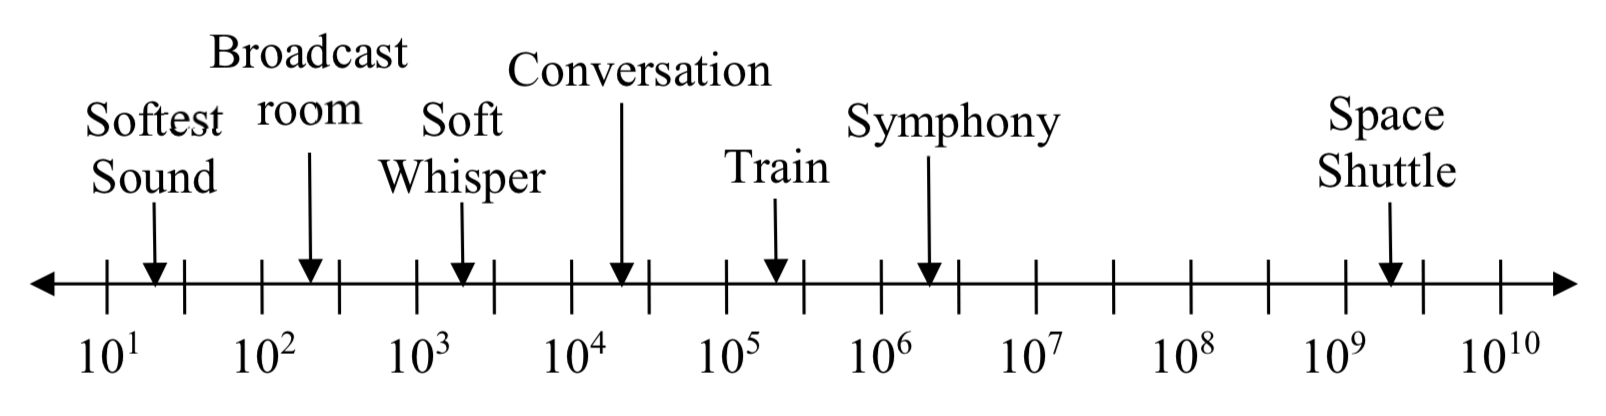 Una línea numérica con ticks igualmente espaciados etiquetados 10 al 1, 10 al 2, y así sucesivamente hasta 10 al 10. Hay flechas para el sonido más suave alrededor del 10 al 1.3, Sala de transmisión alrededor del 10 al 2.3, Susurro suave a las 10 al 3.3, Conversación a las 10 al 4.3, Tren a las 10 al 5.3, Sinfonía a las 10 al 6.3 y Transbordador espacial a las 10 al 9.3.